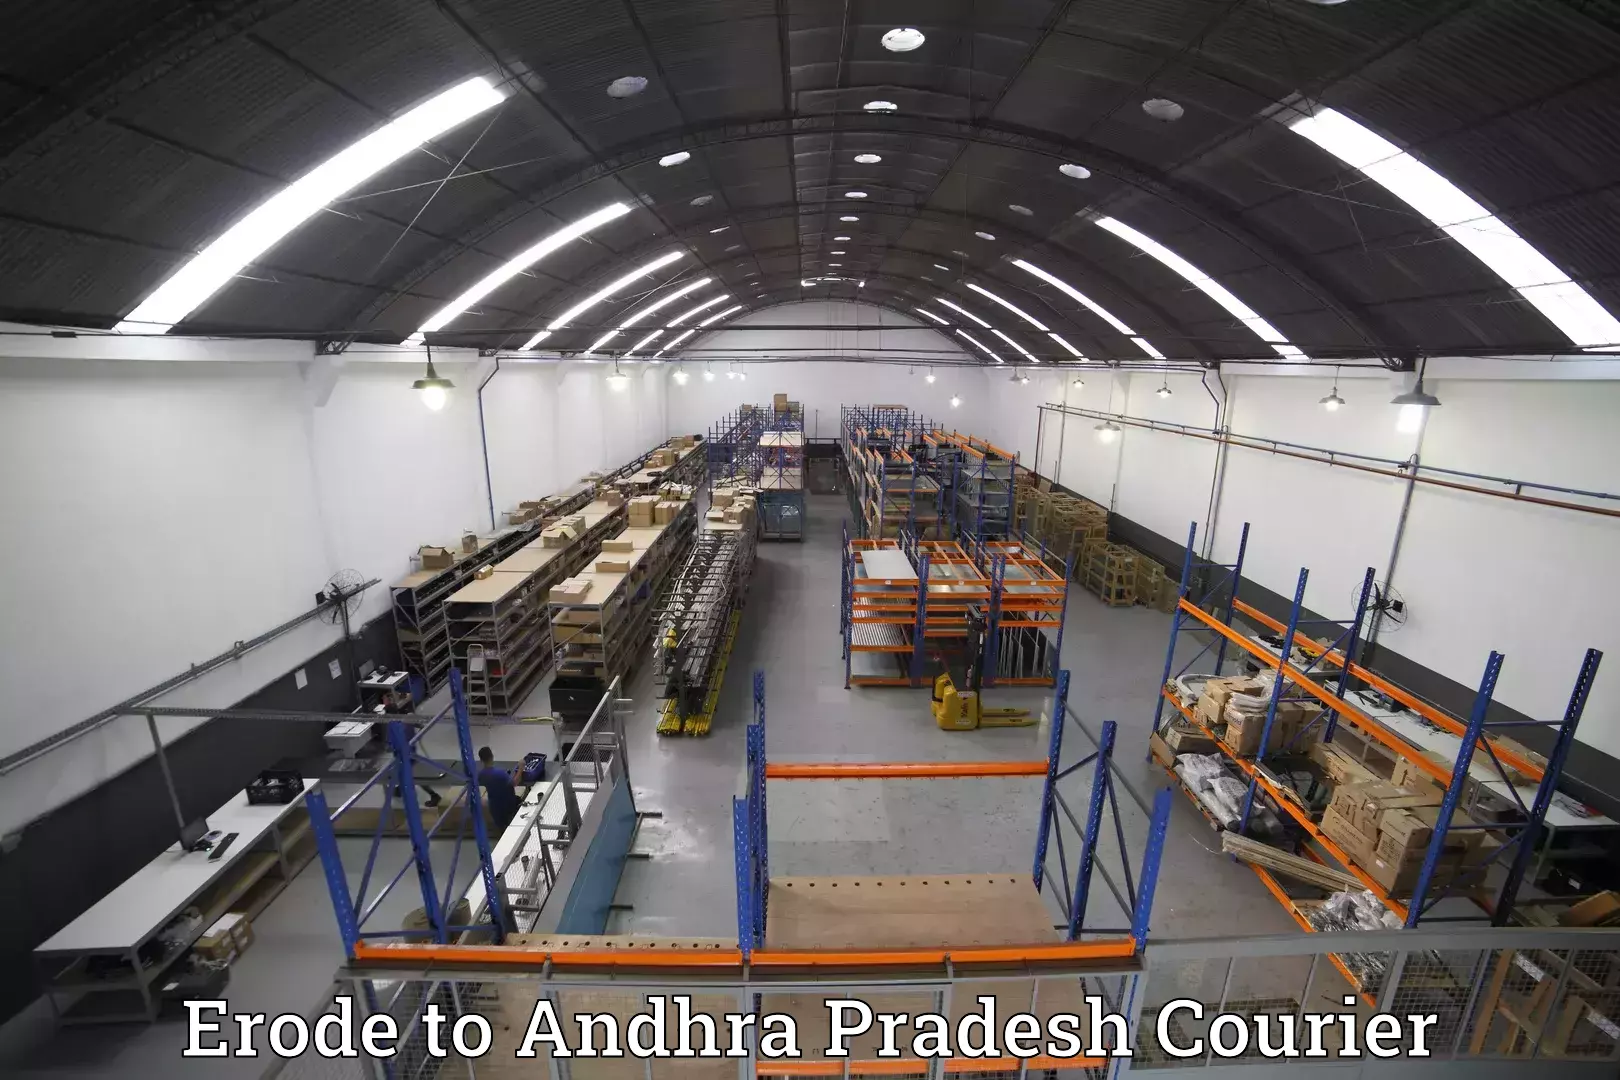 Luggage dispatch service Erode to Andhra Pradesh